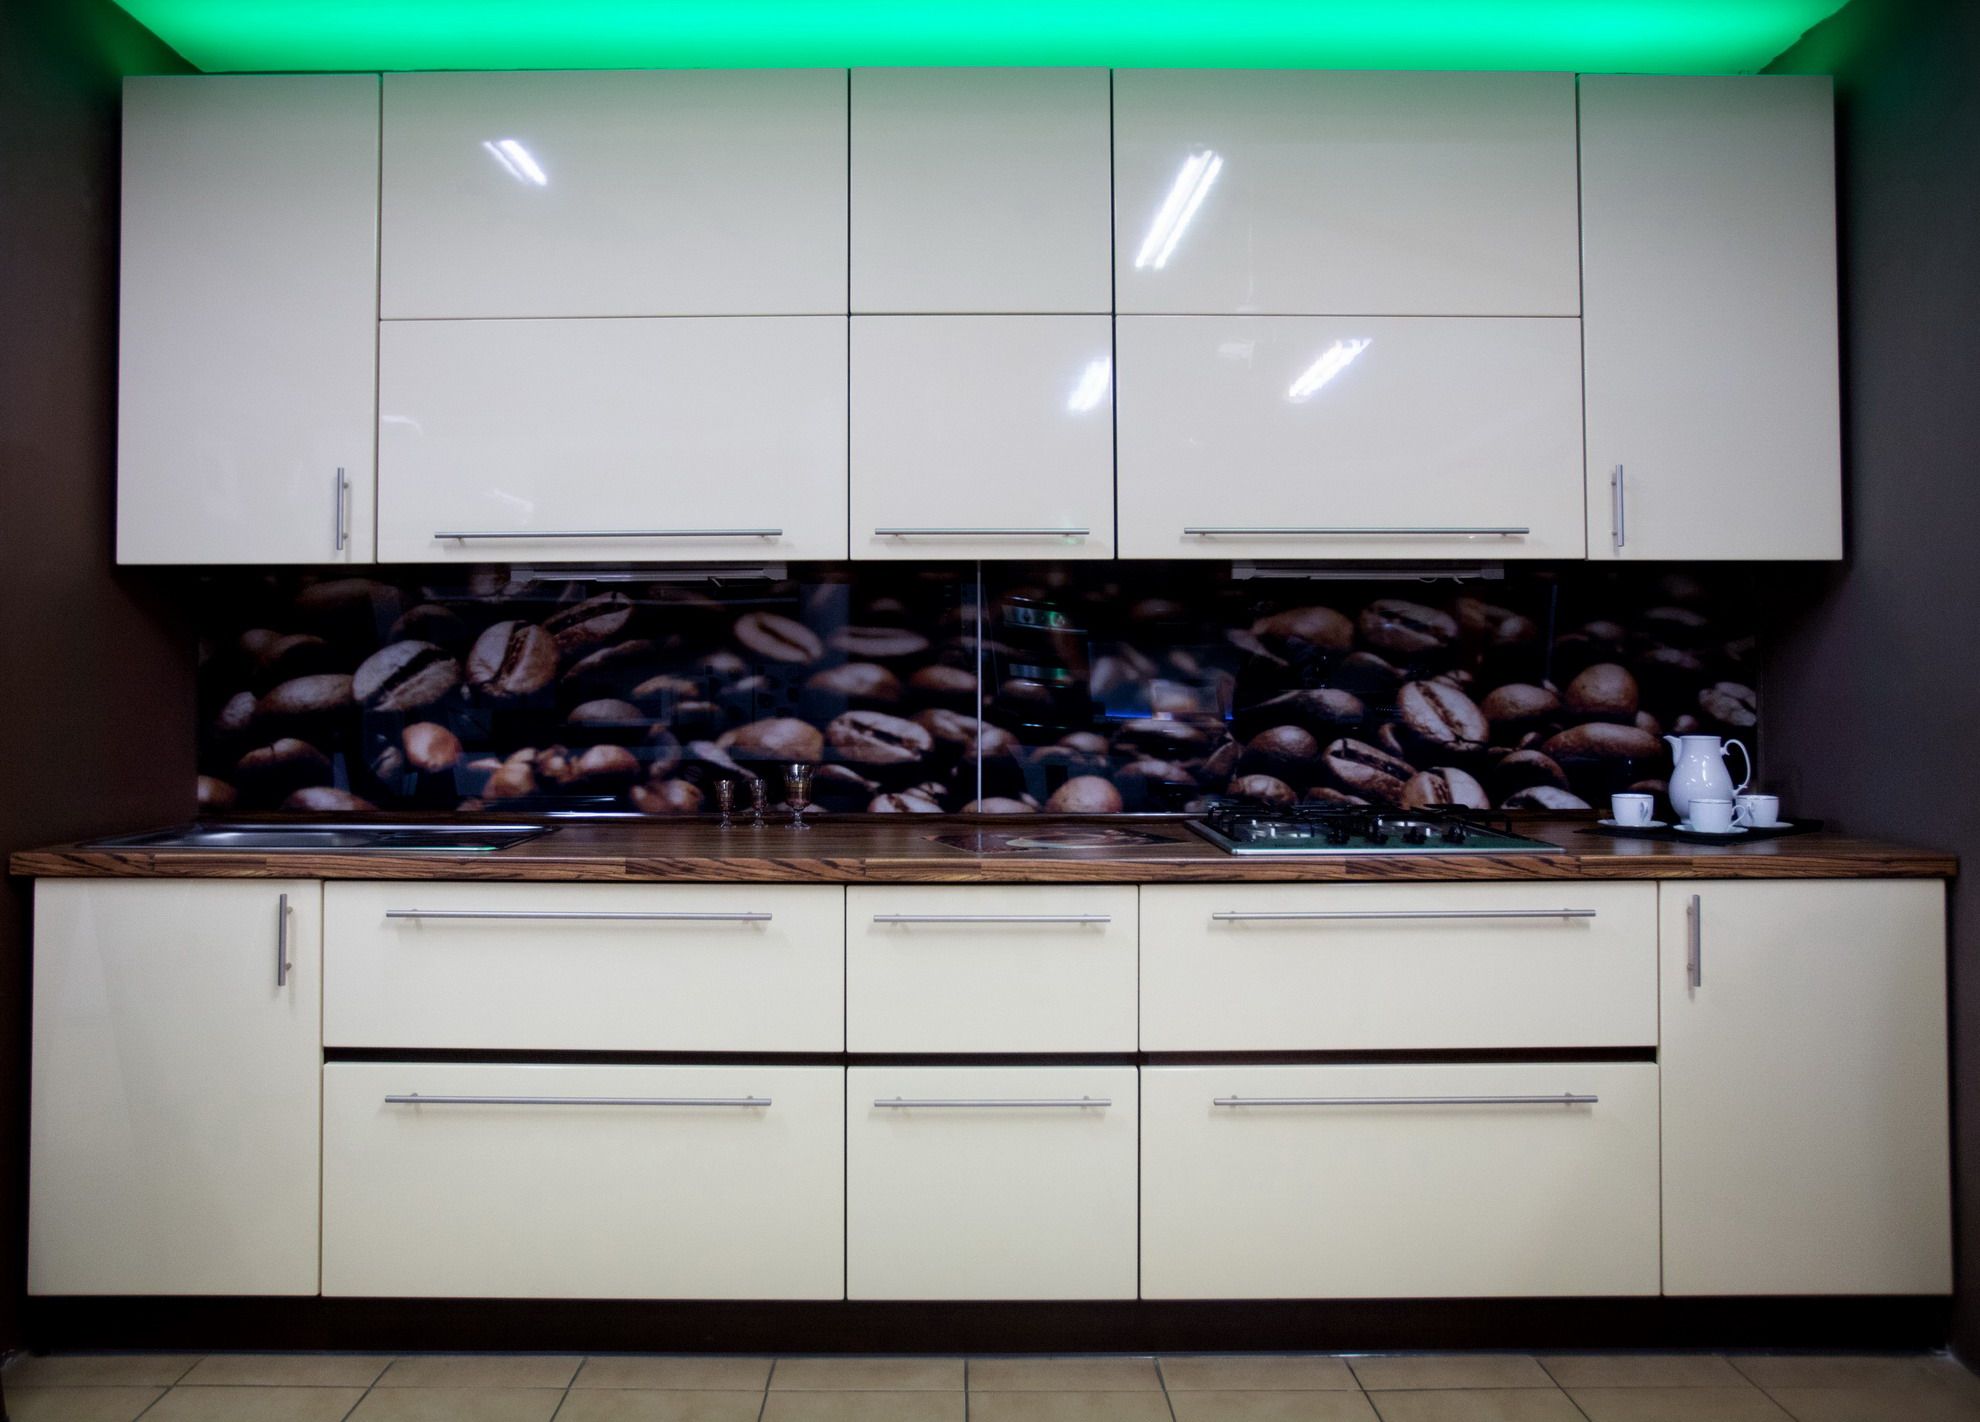 Kuchnia z frontami lakierowanymi + szklane panele na ścianie